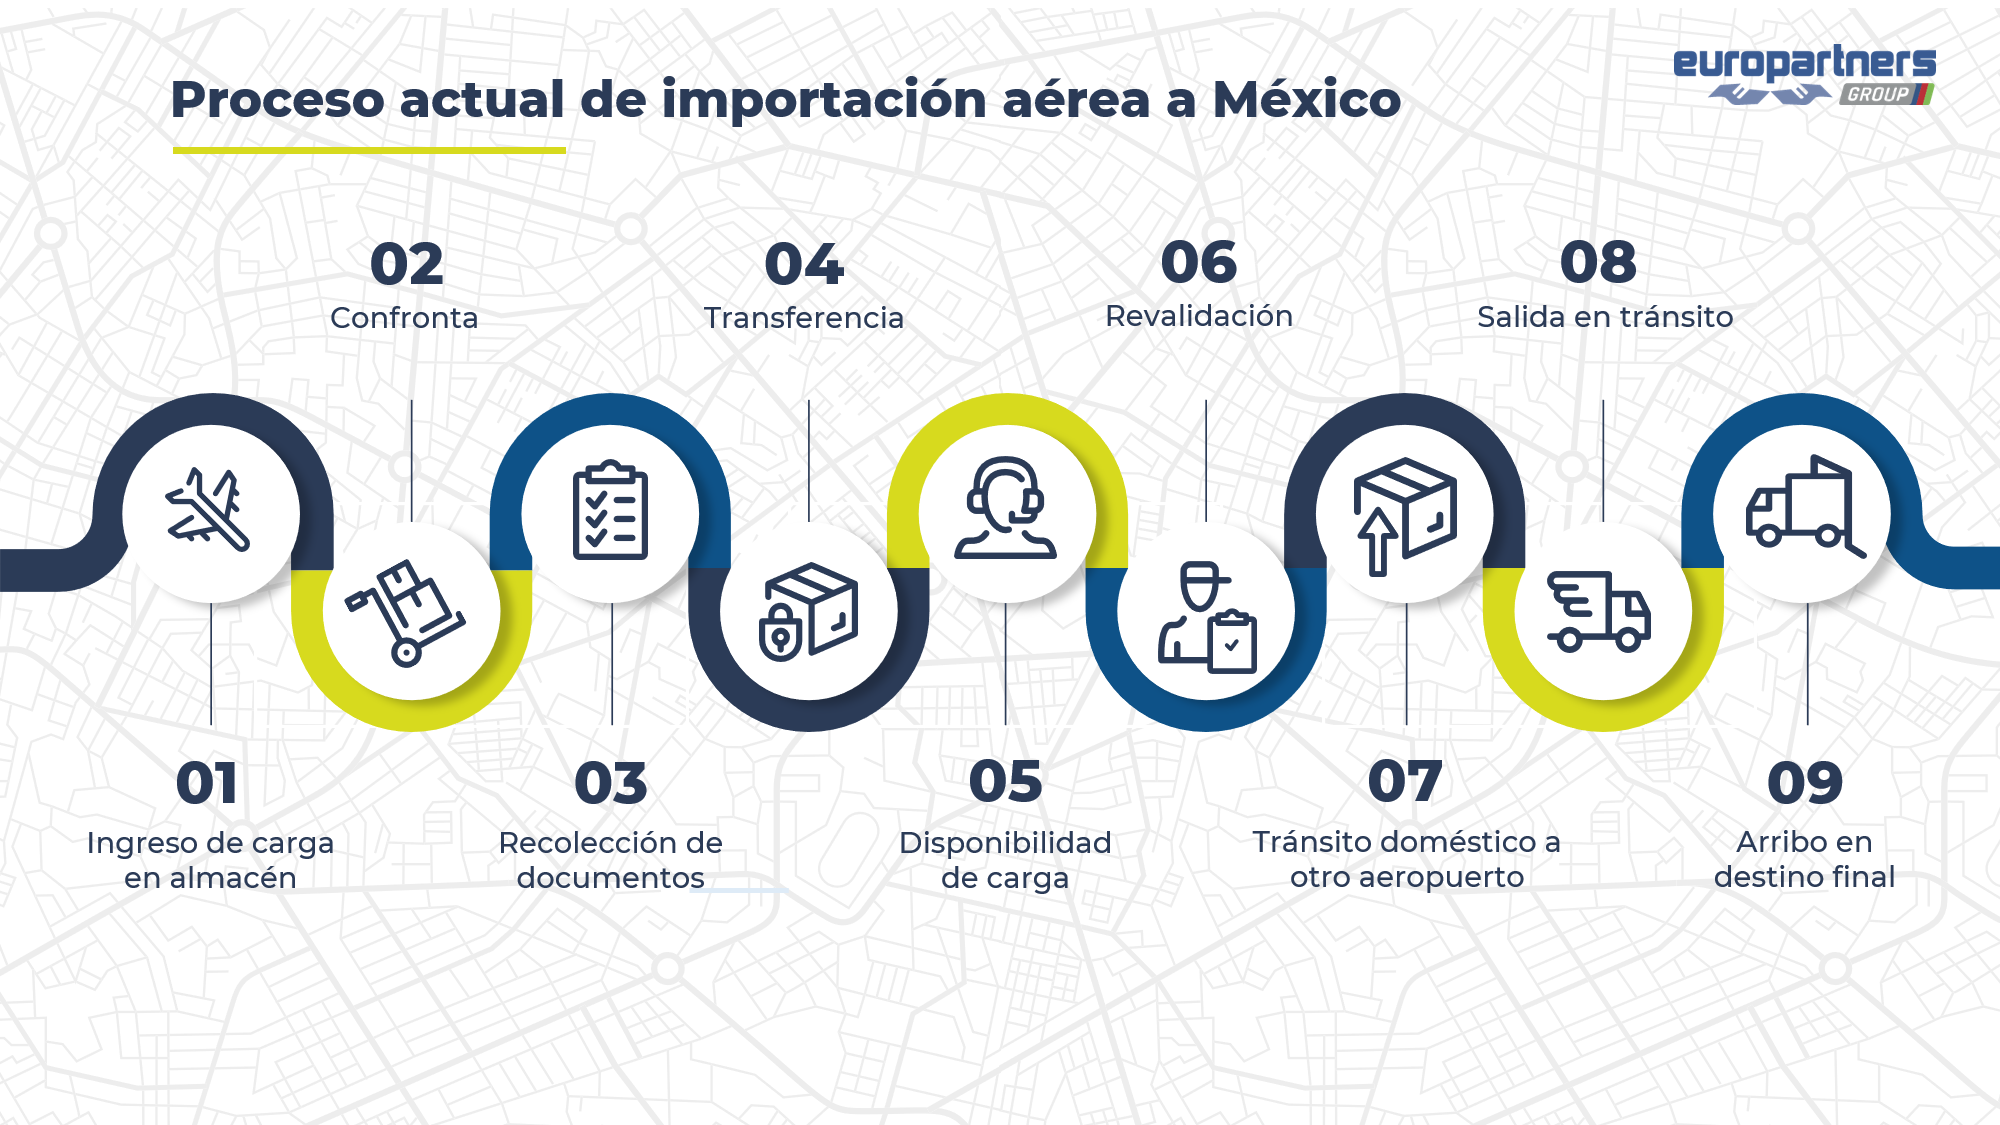 Gráfica que ilusta el proceso actual de importación a México. Lo detallaremos a continuación.